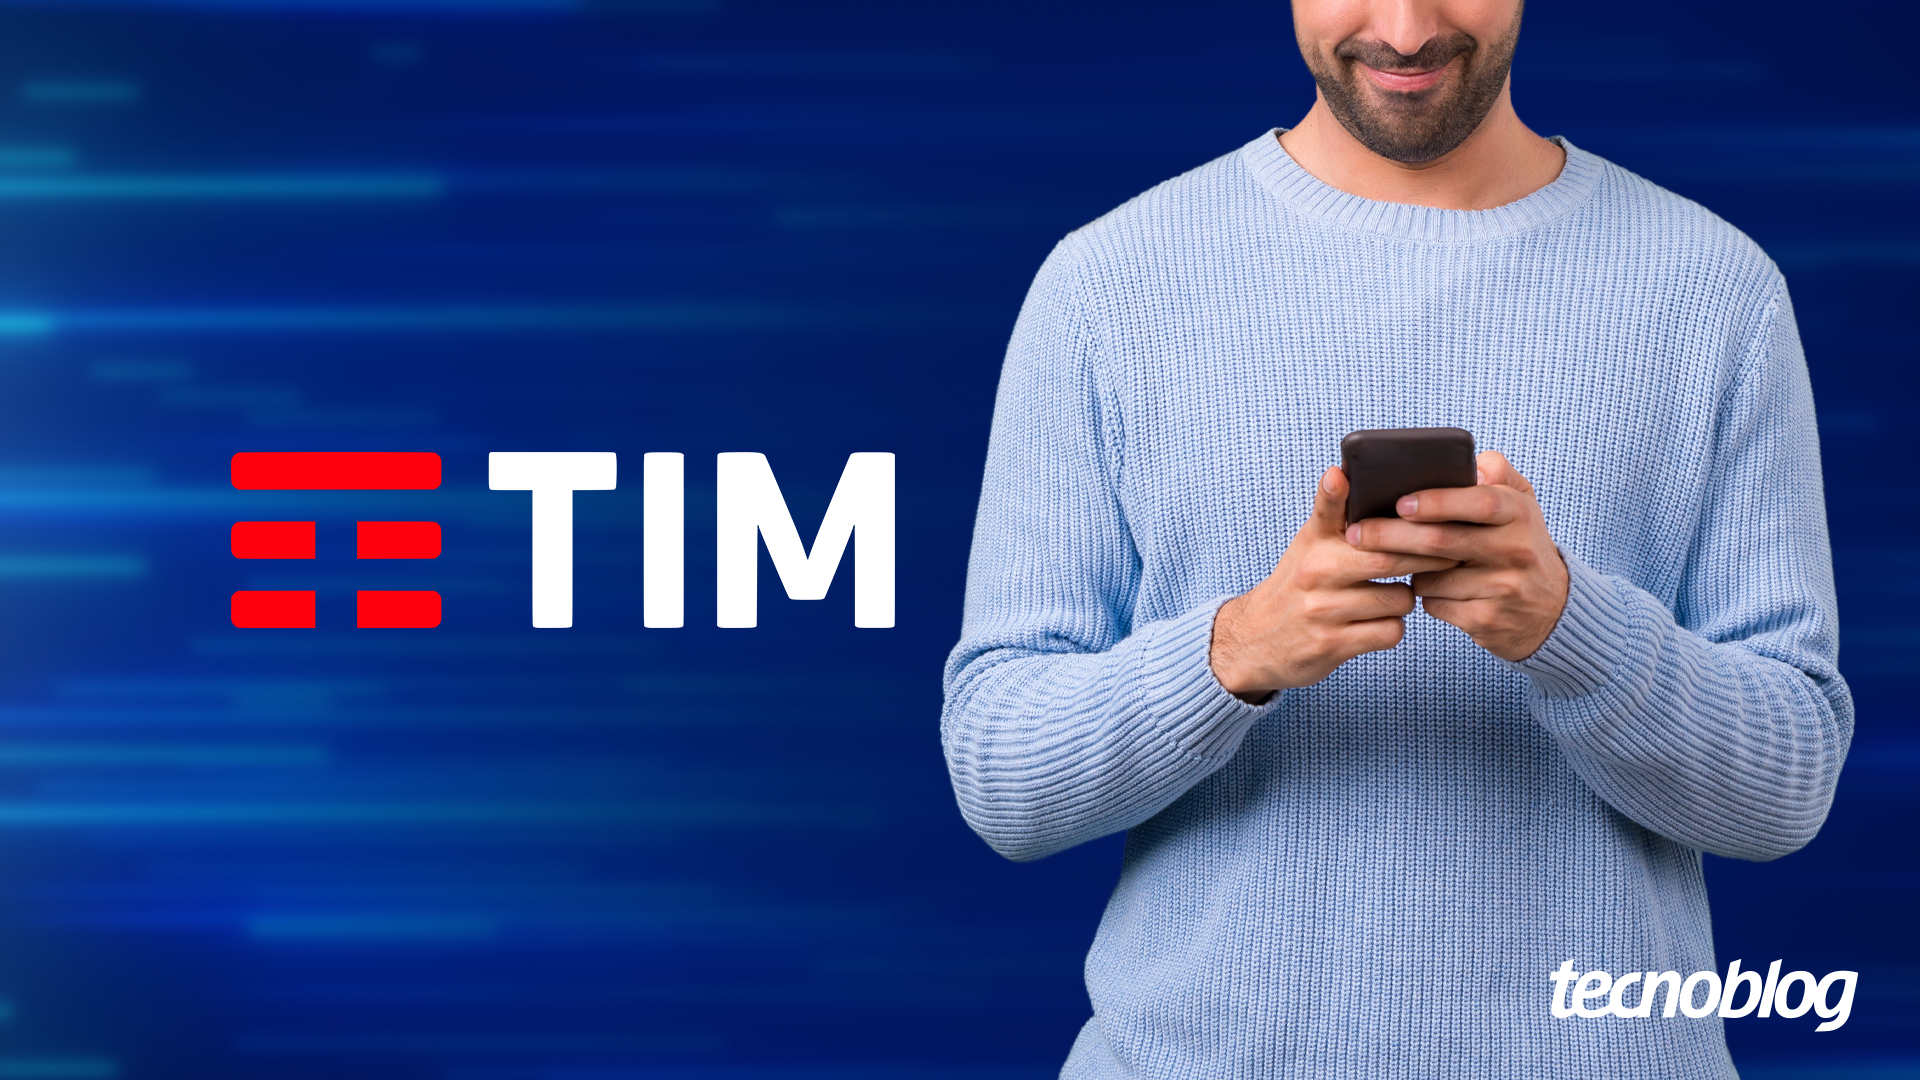 TIM Black ganha planos com mais internet e roaming internacional